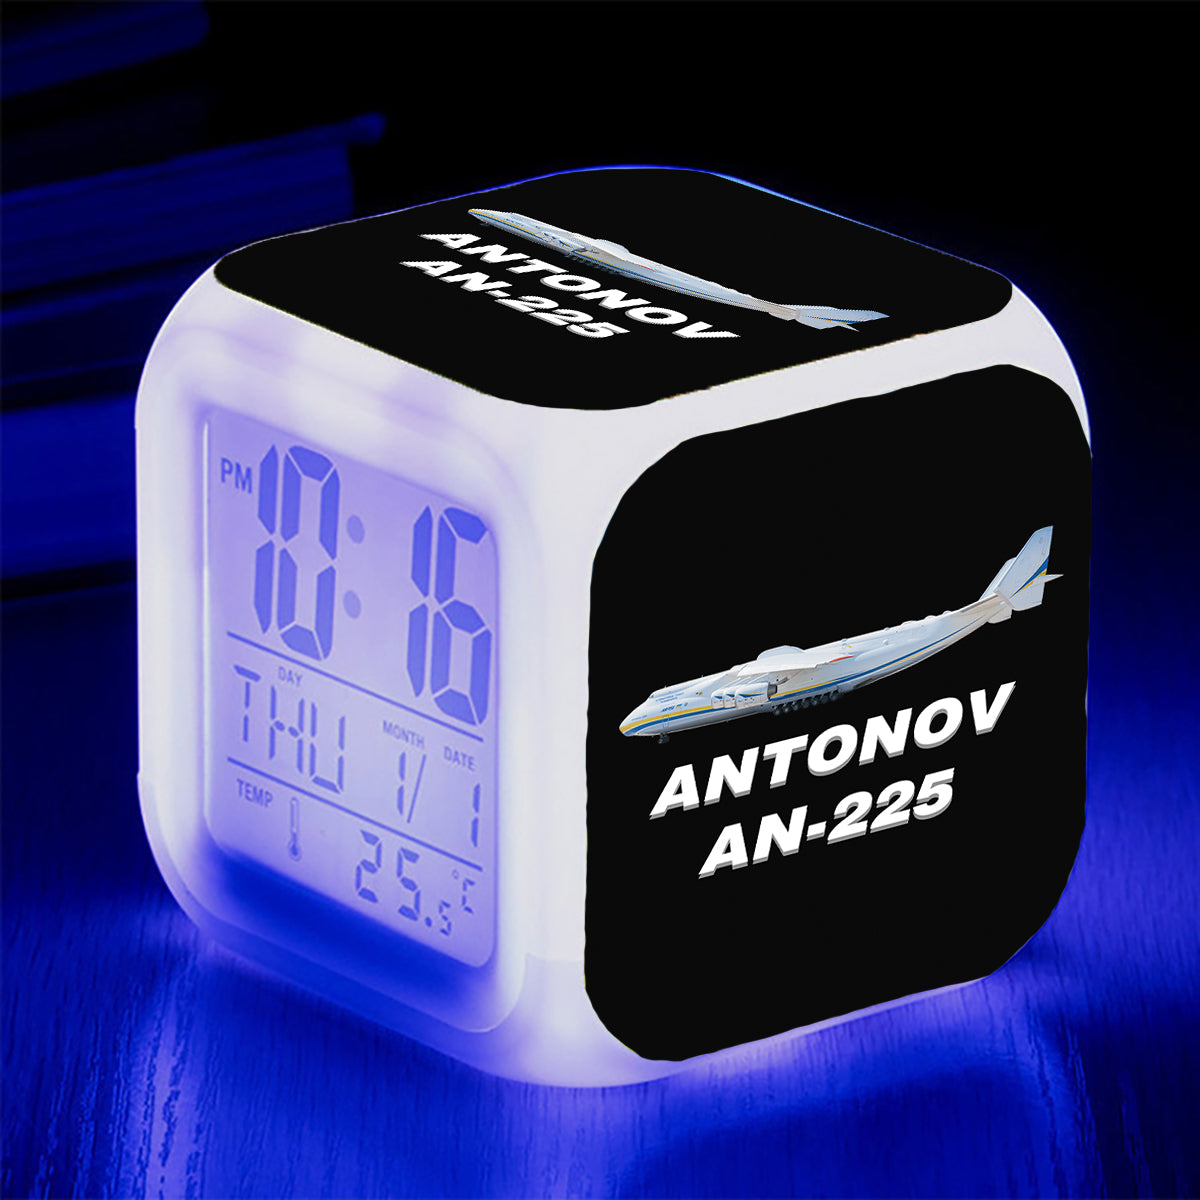 The Antonov AN-225 Designed "7 Colour" Digital Alarm Clock